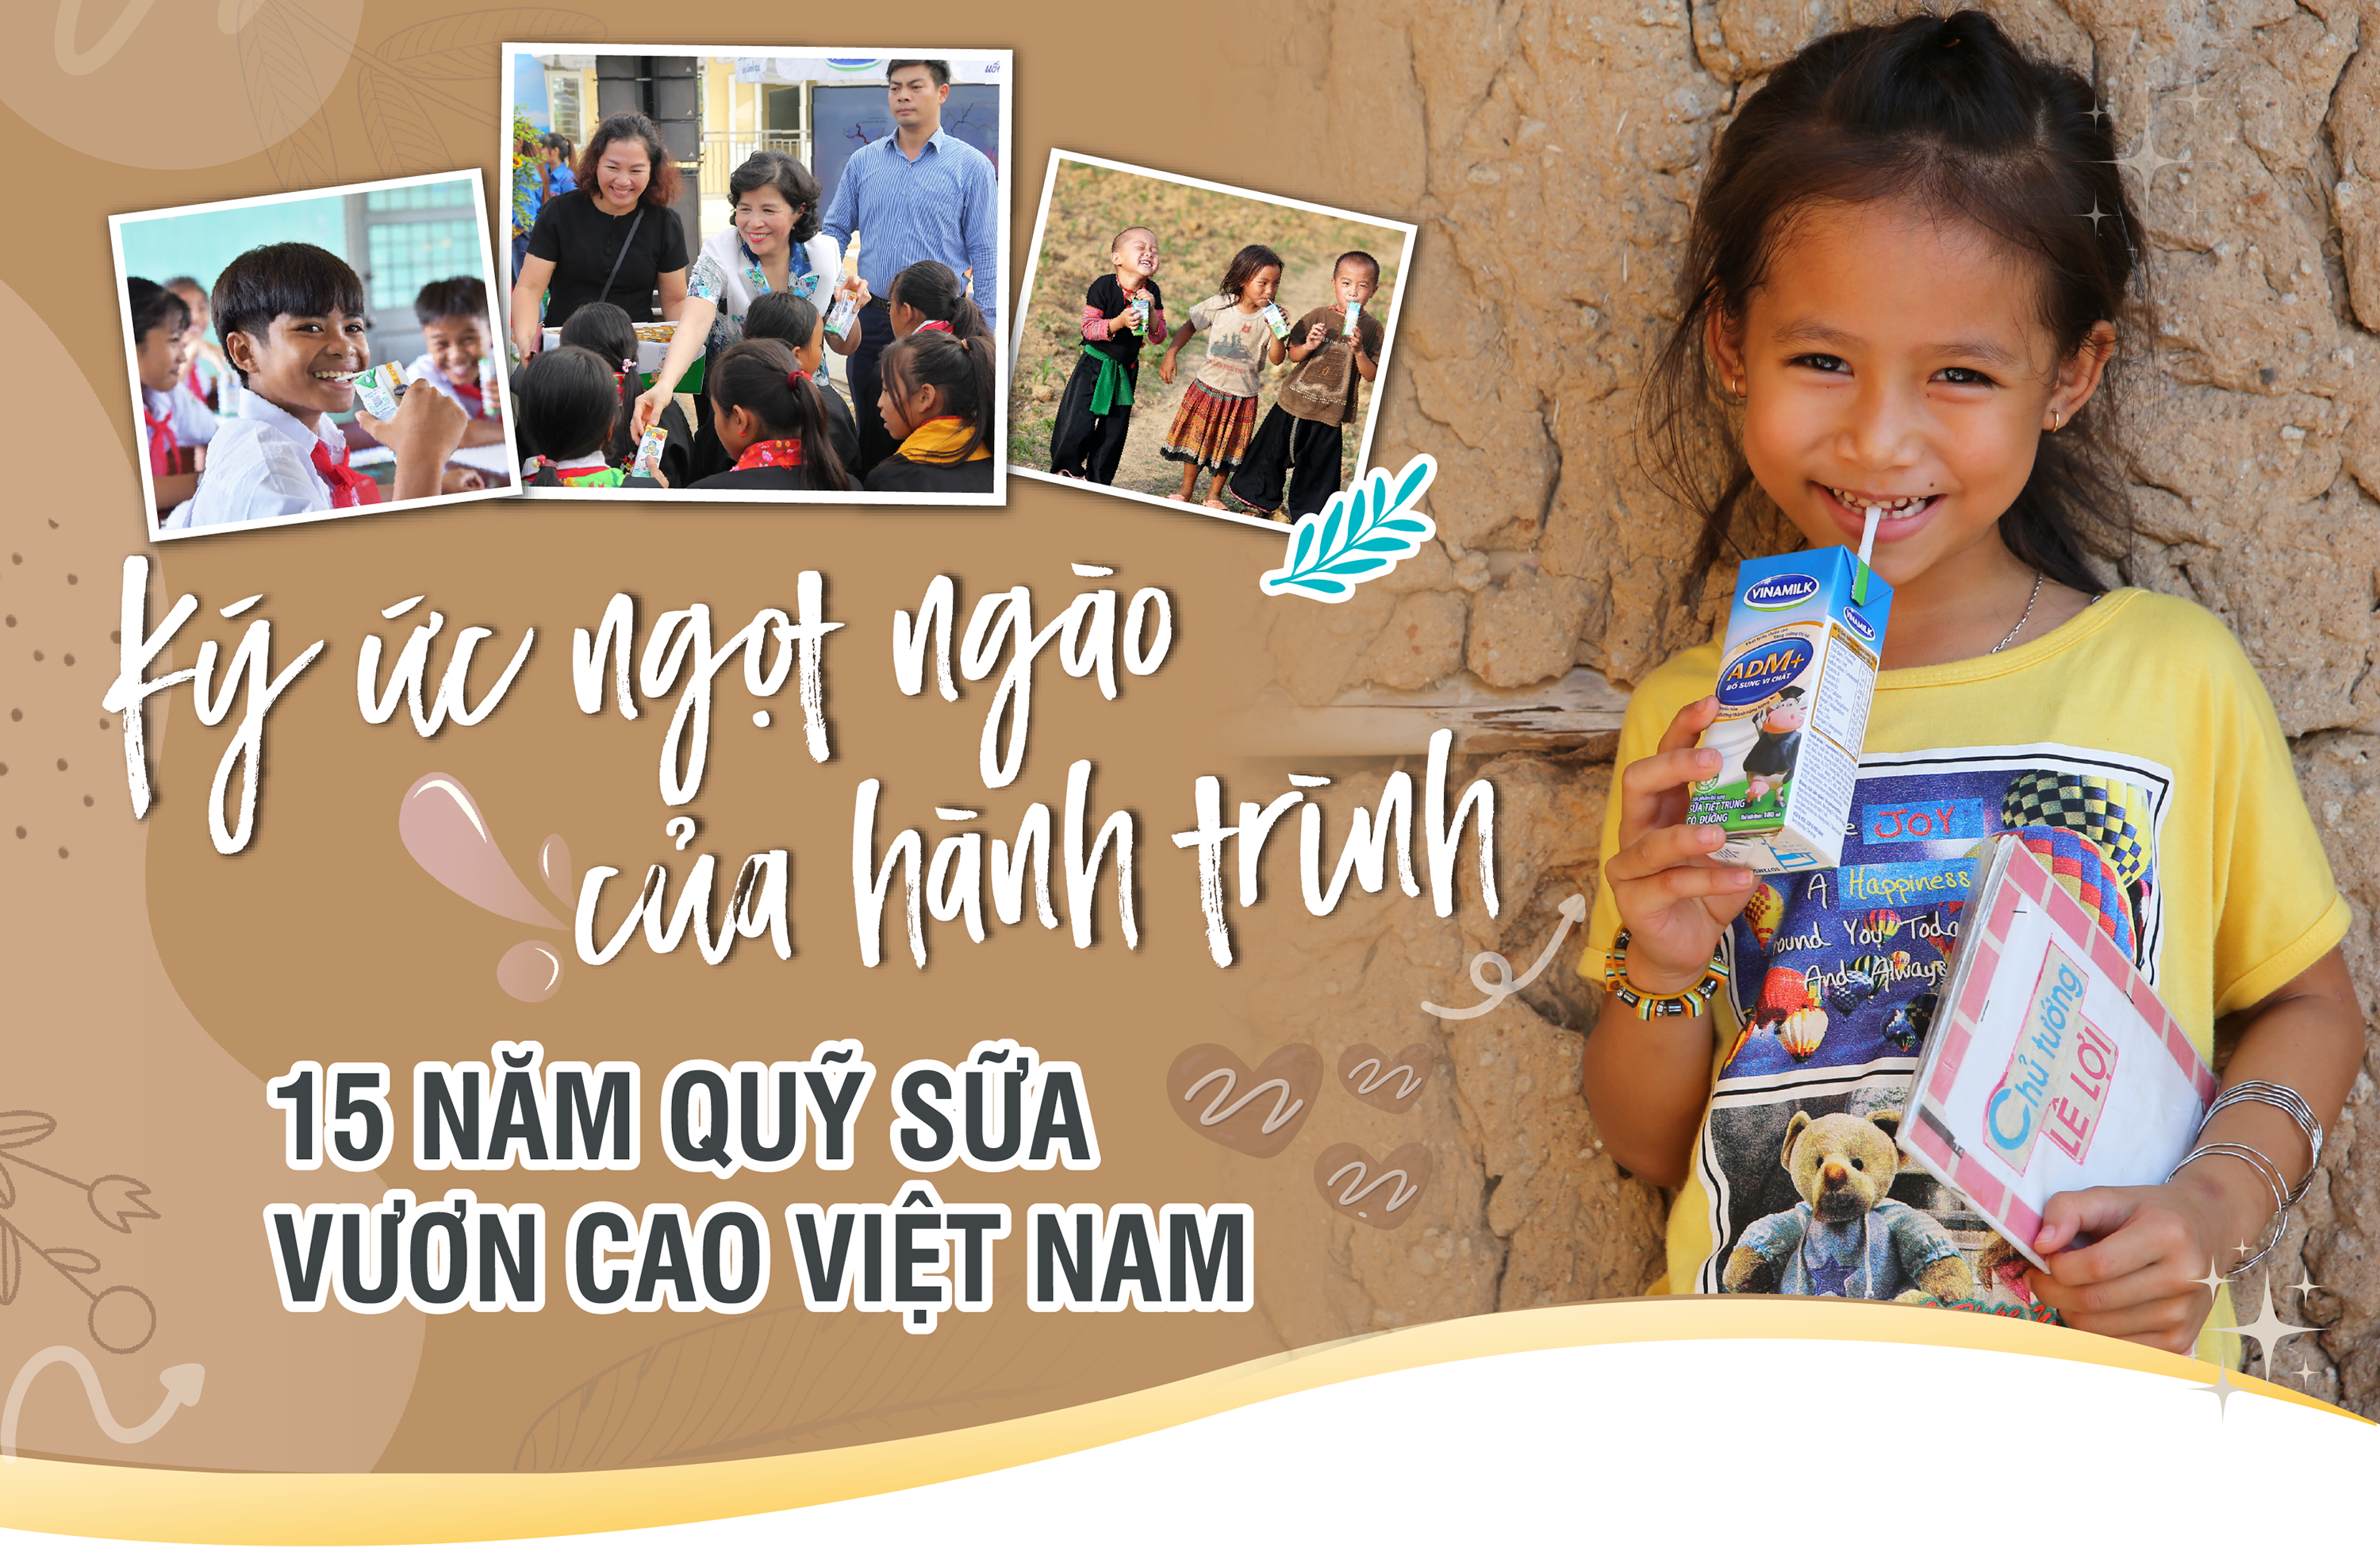 Ký ức ngọt ngào của hành trình 15 năm Quỹ sữa Vươn cao Việt Nam - Ảnh 1